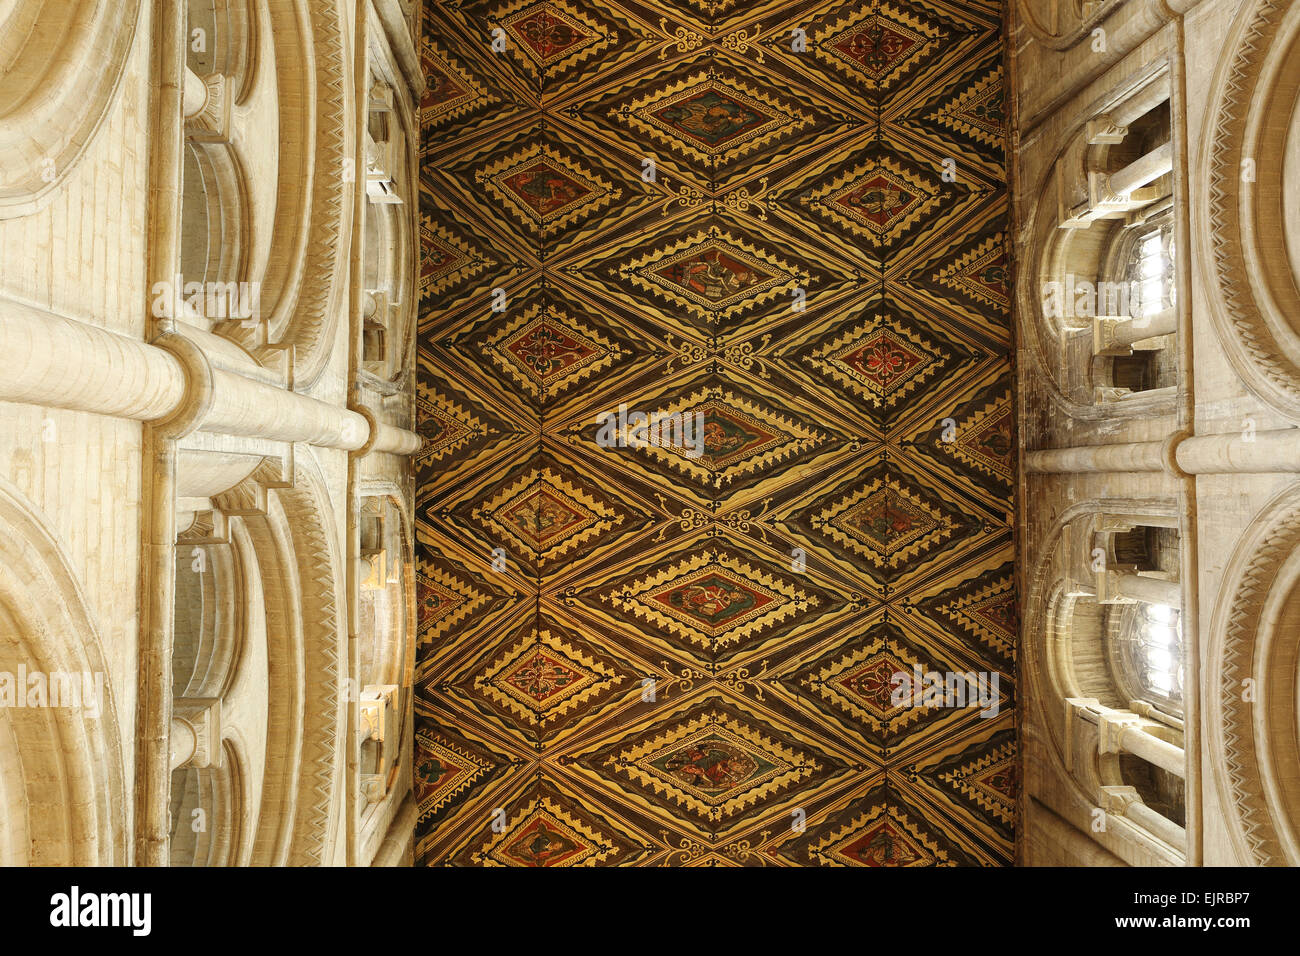 Le plafond en bois orné de la nef dans la Cathédrale de Peterborough, en Angleterre. Banque D'Images